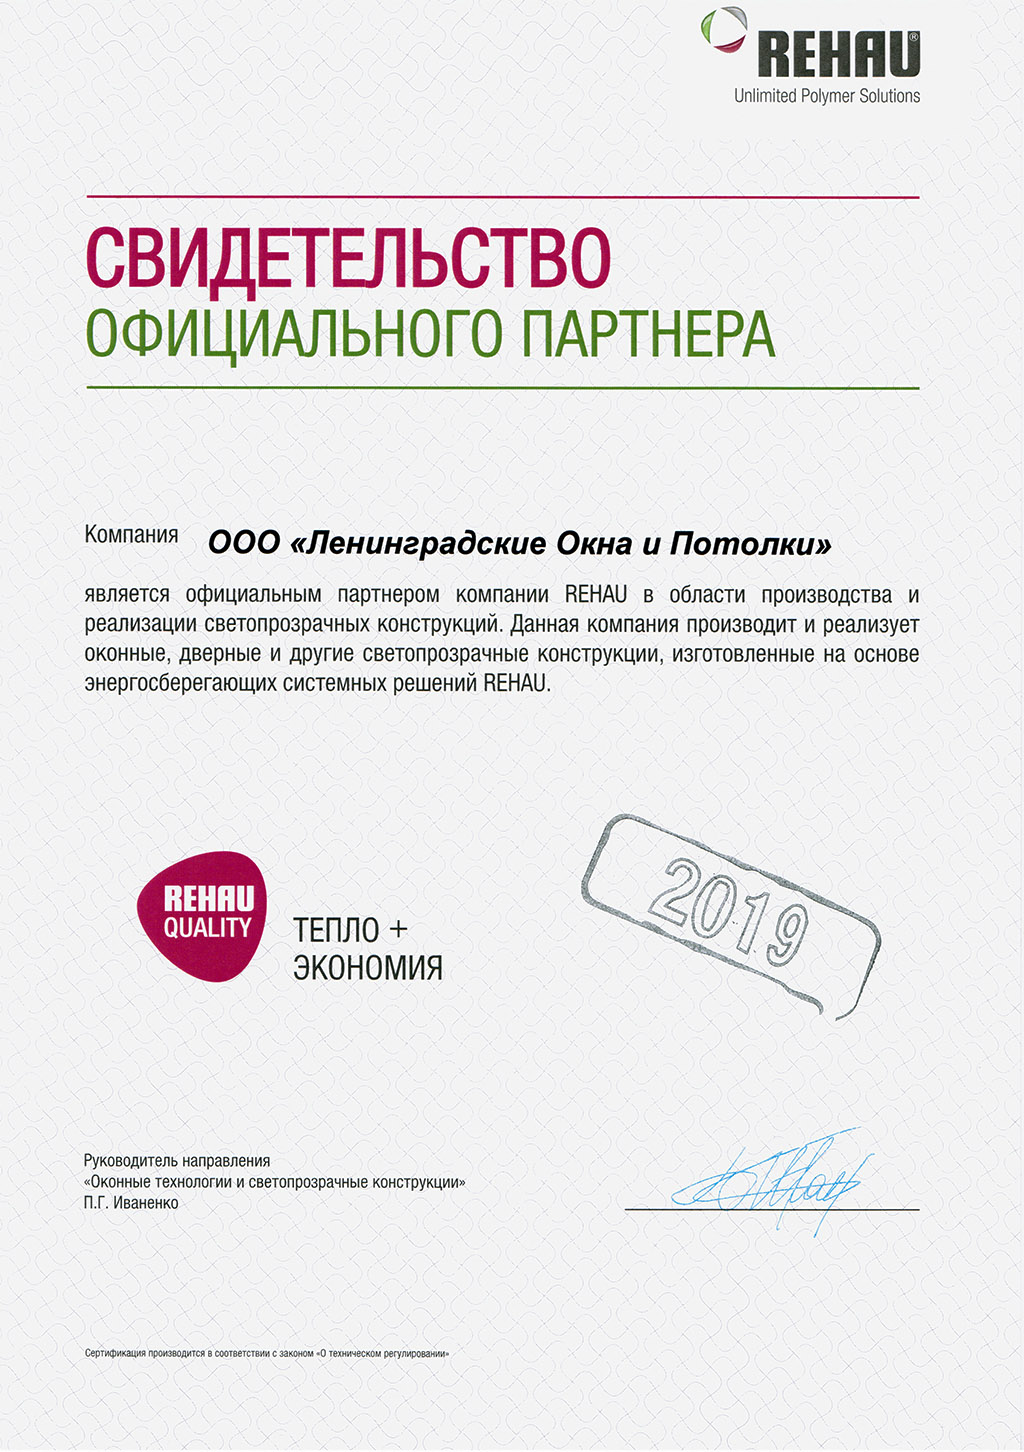 Сертификат Rehau - Ленинградские Окна и Потолки